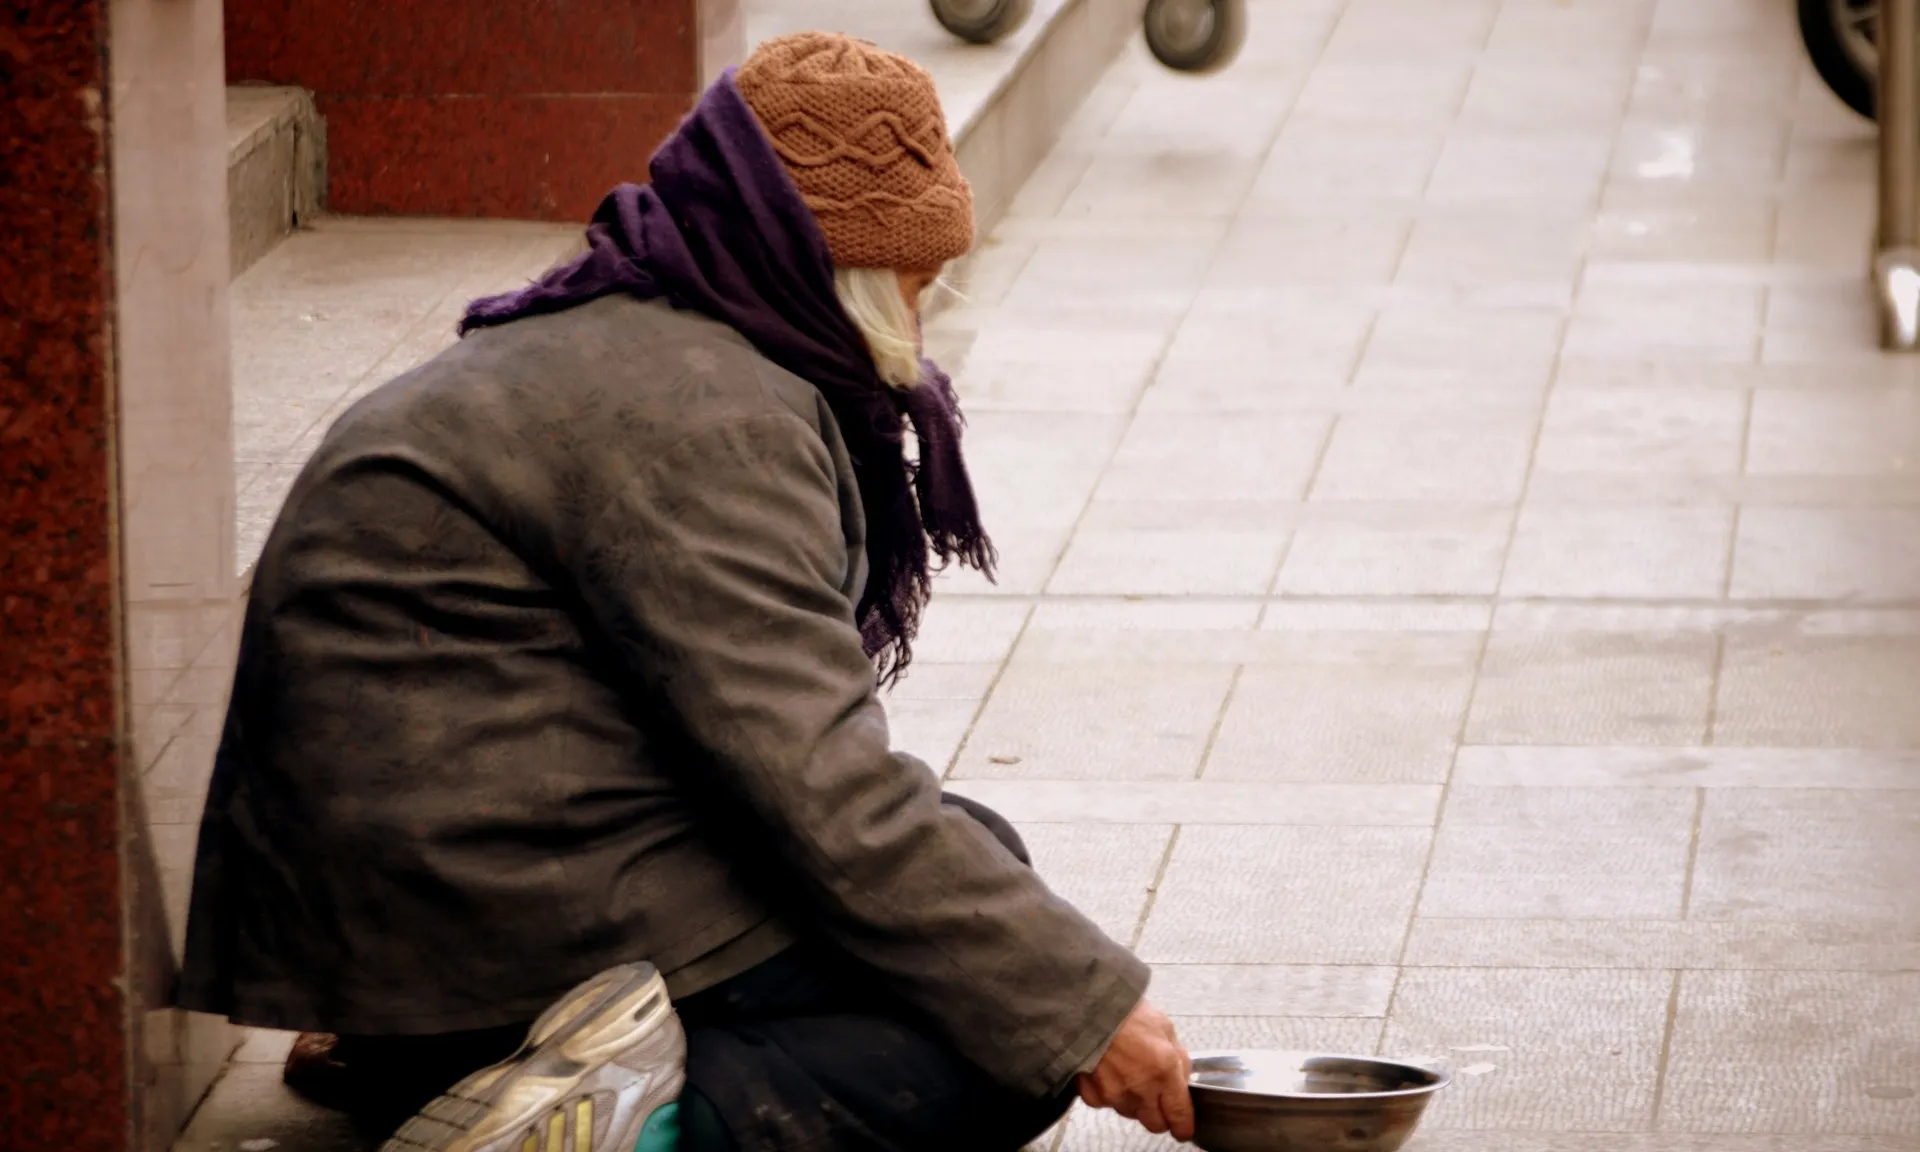 Una persona sense sostre viu al carrer en situació de pobresa.